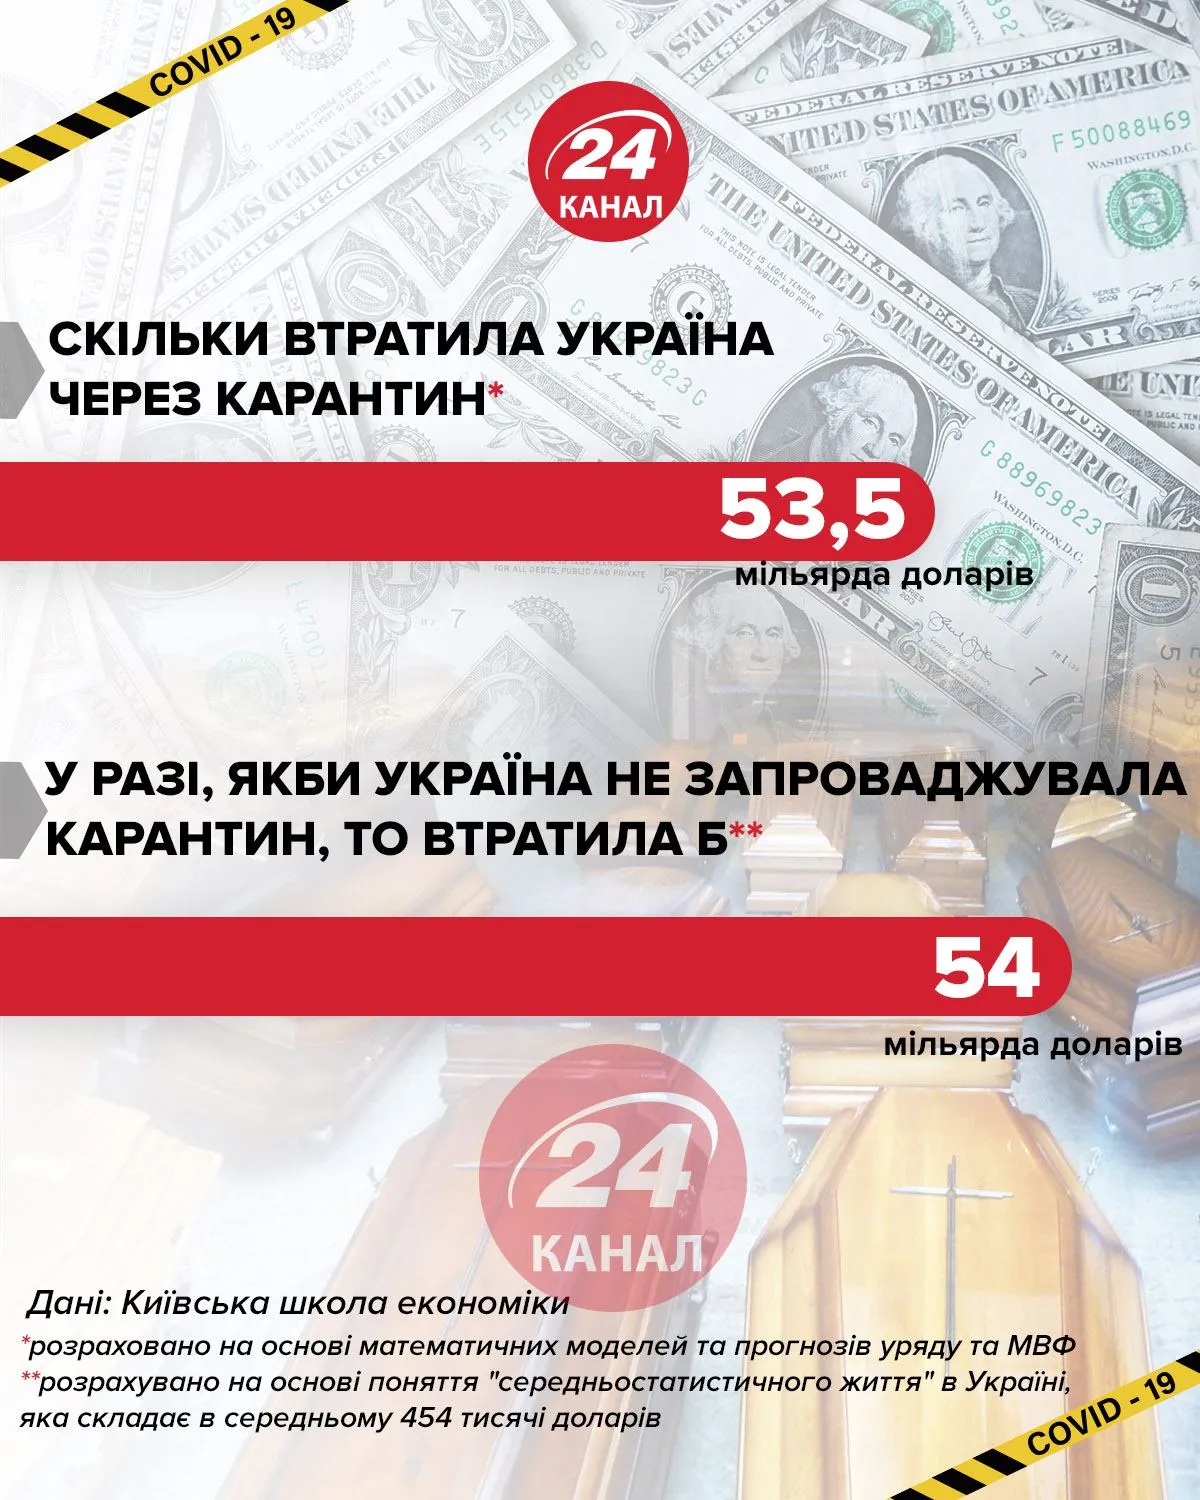 Сколько потеряла бы Украина не вводя карантин / Инфографика 24 канала